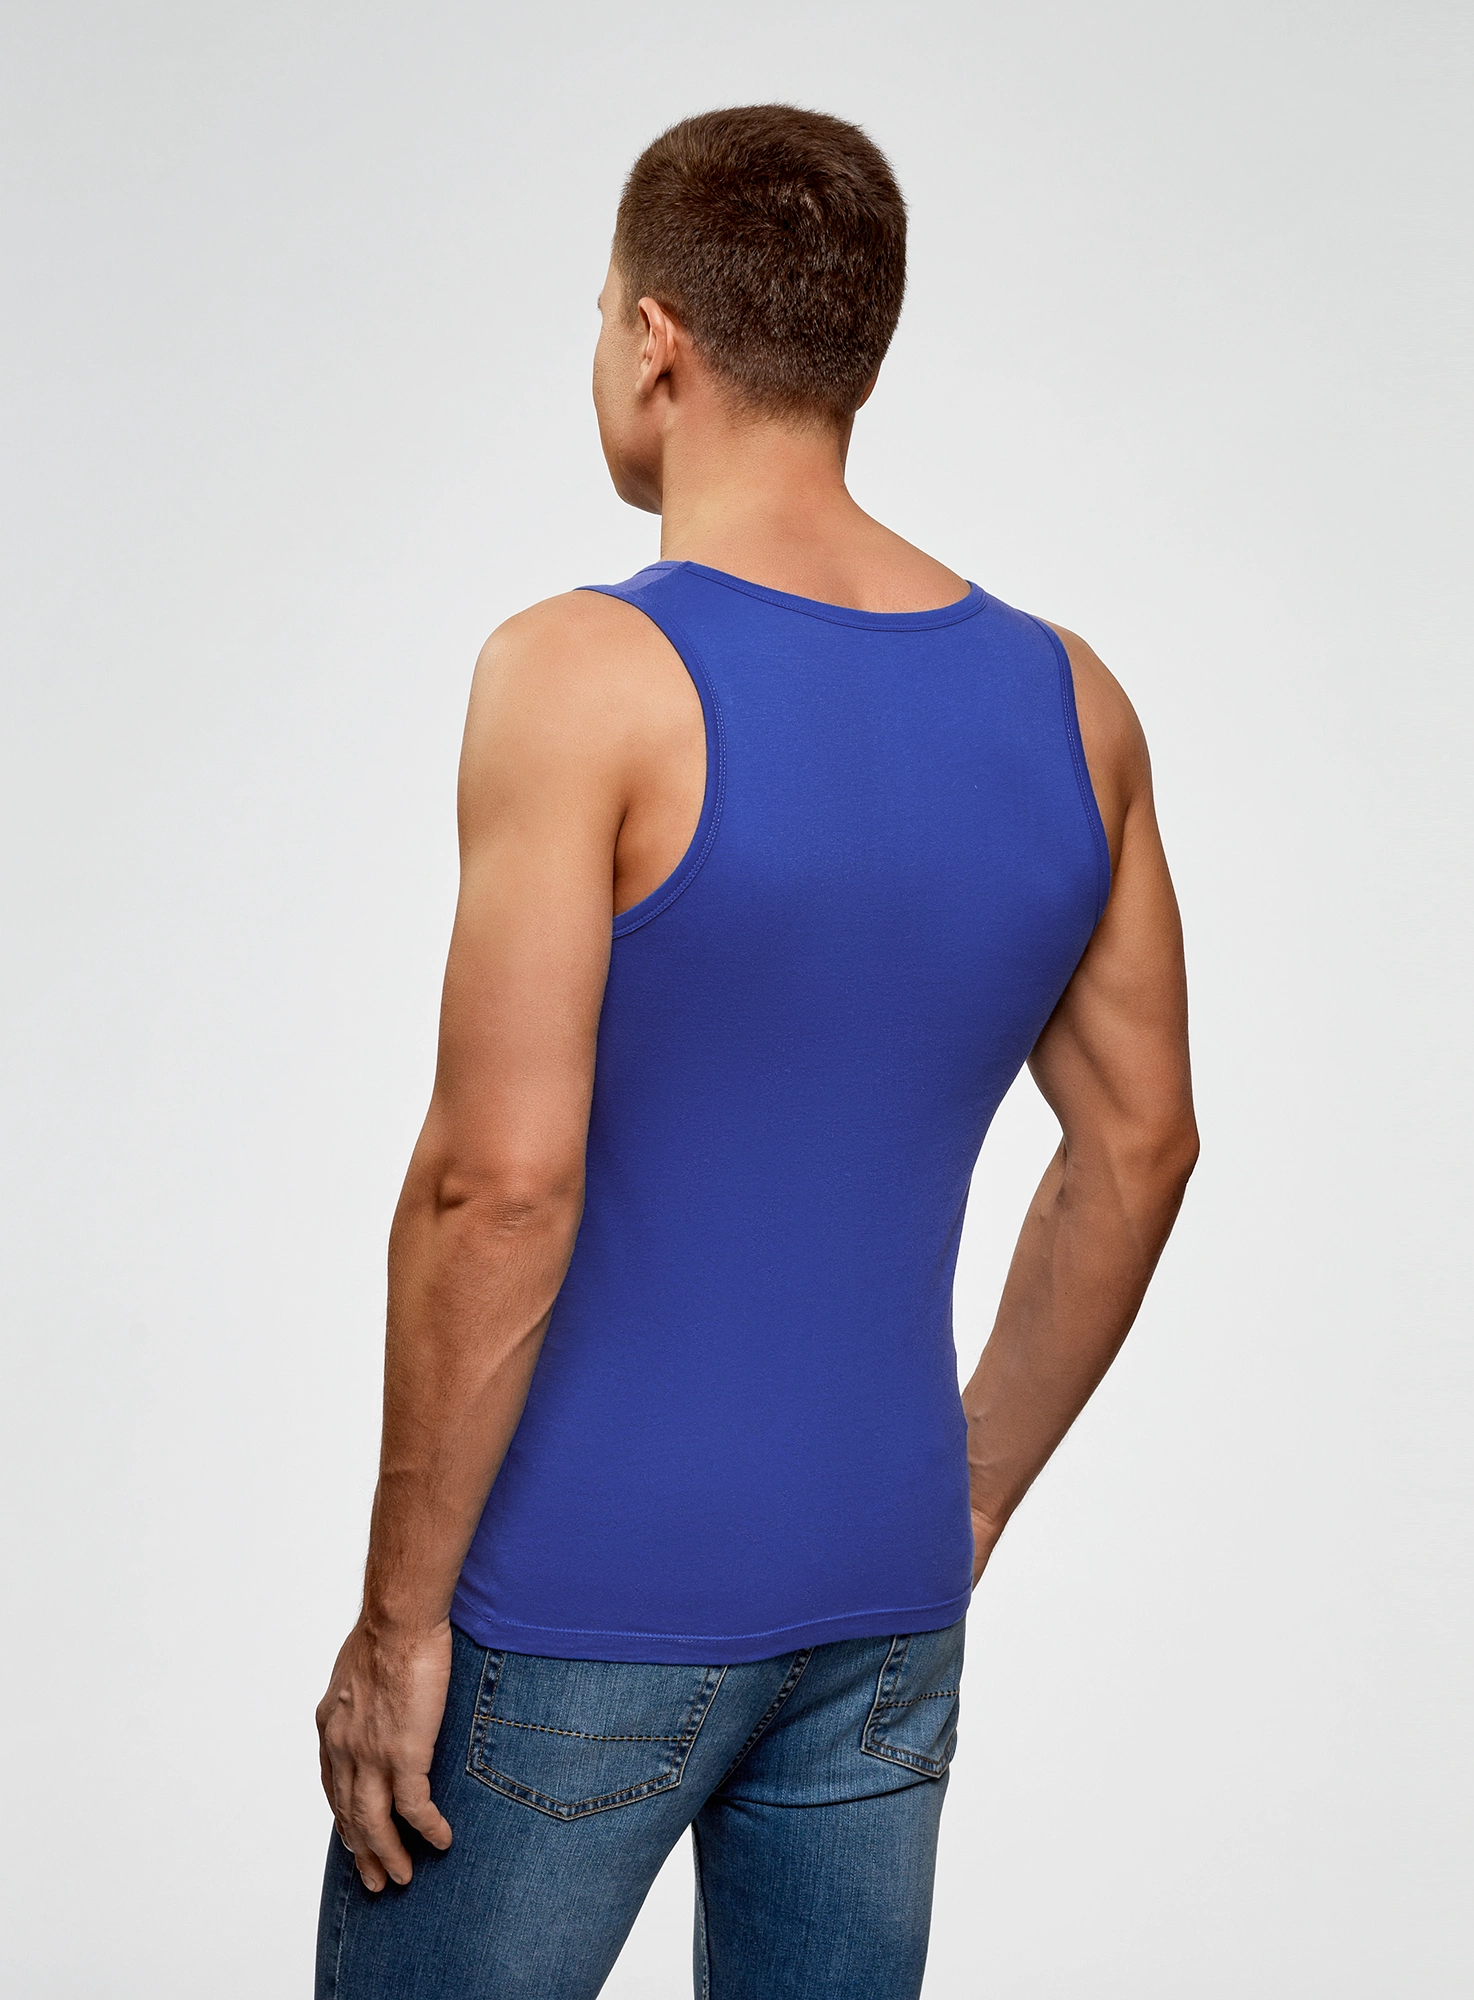 Купить майку базовую (Синий) в интернет-магазине мужской одежды 